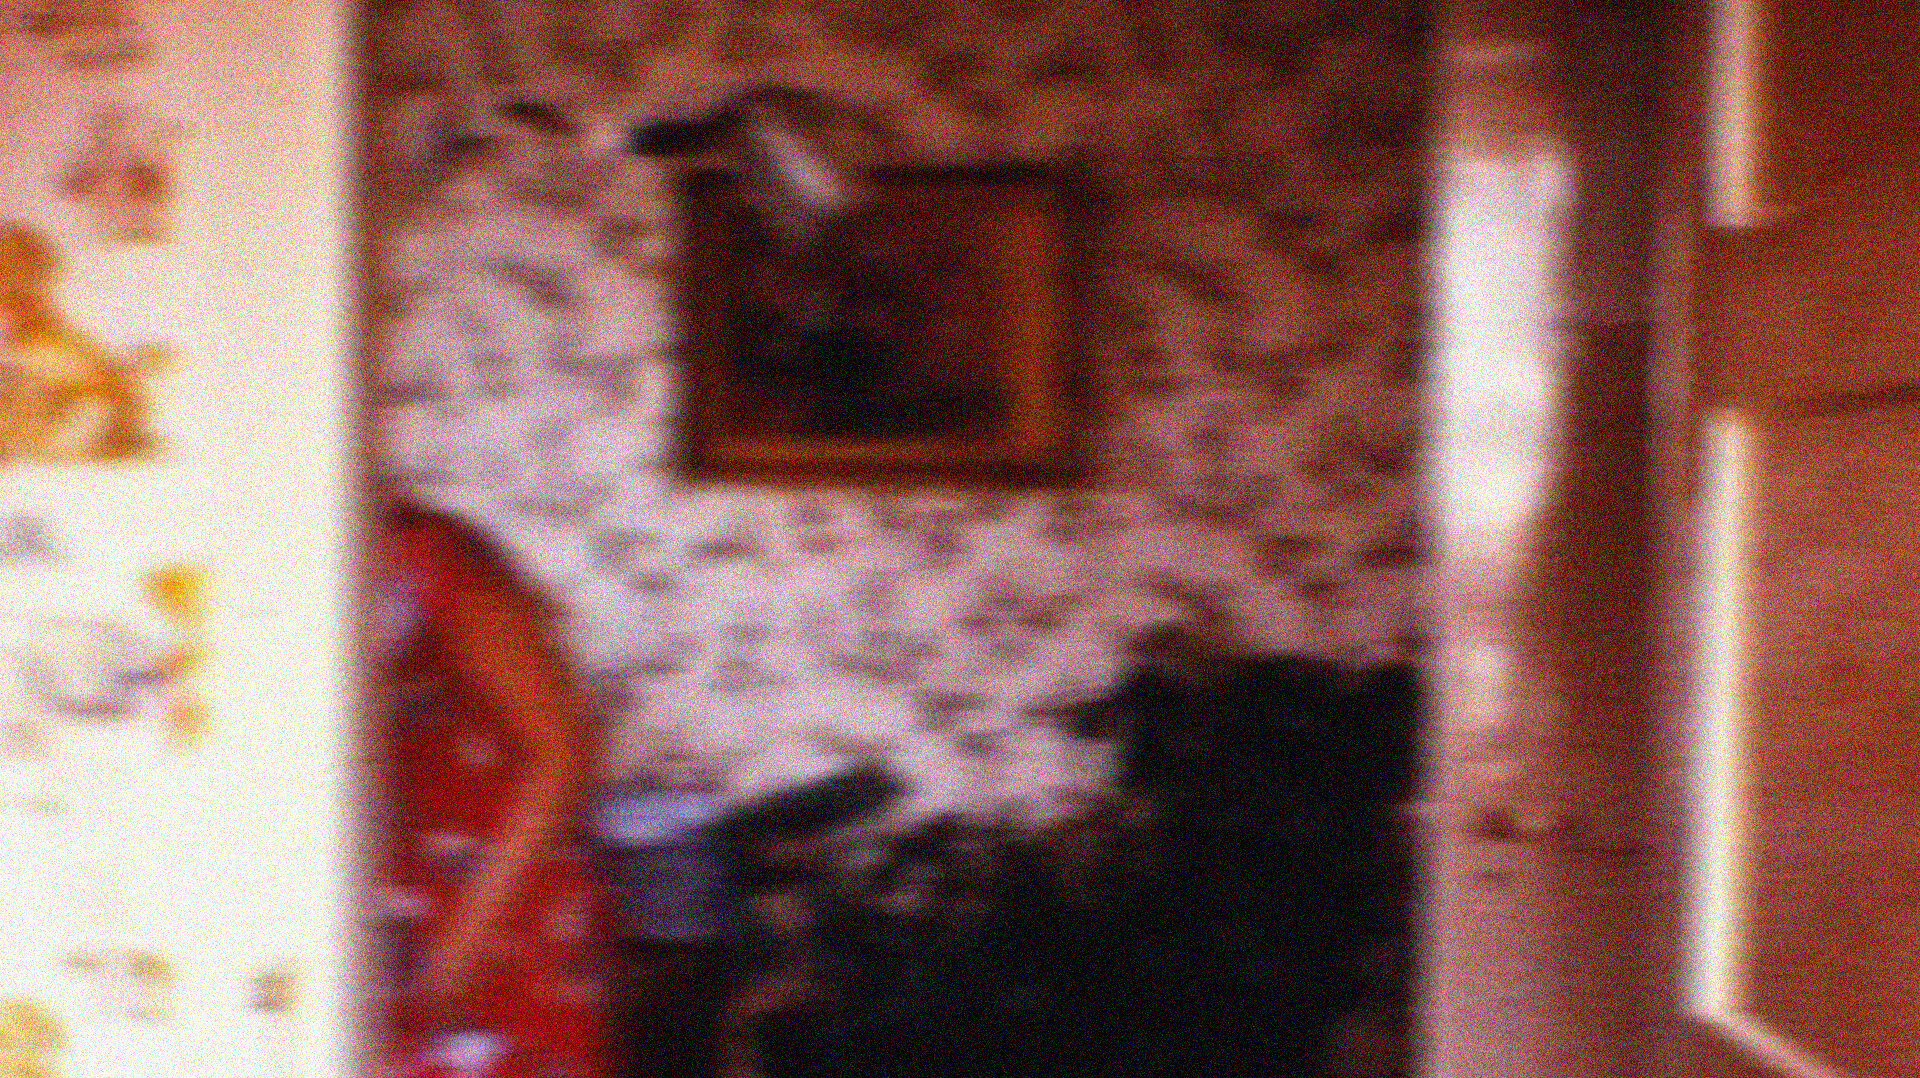 Szenenbild aus einem Super 8 Film: ein Wohnzimmer mit 70er-Jahre-Tapete, eine Frau huscht durchs Bild und ist nur verschwommen zu sehen